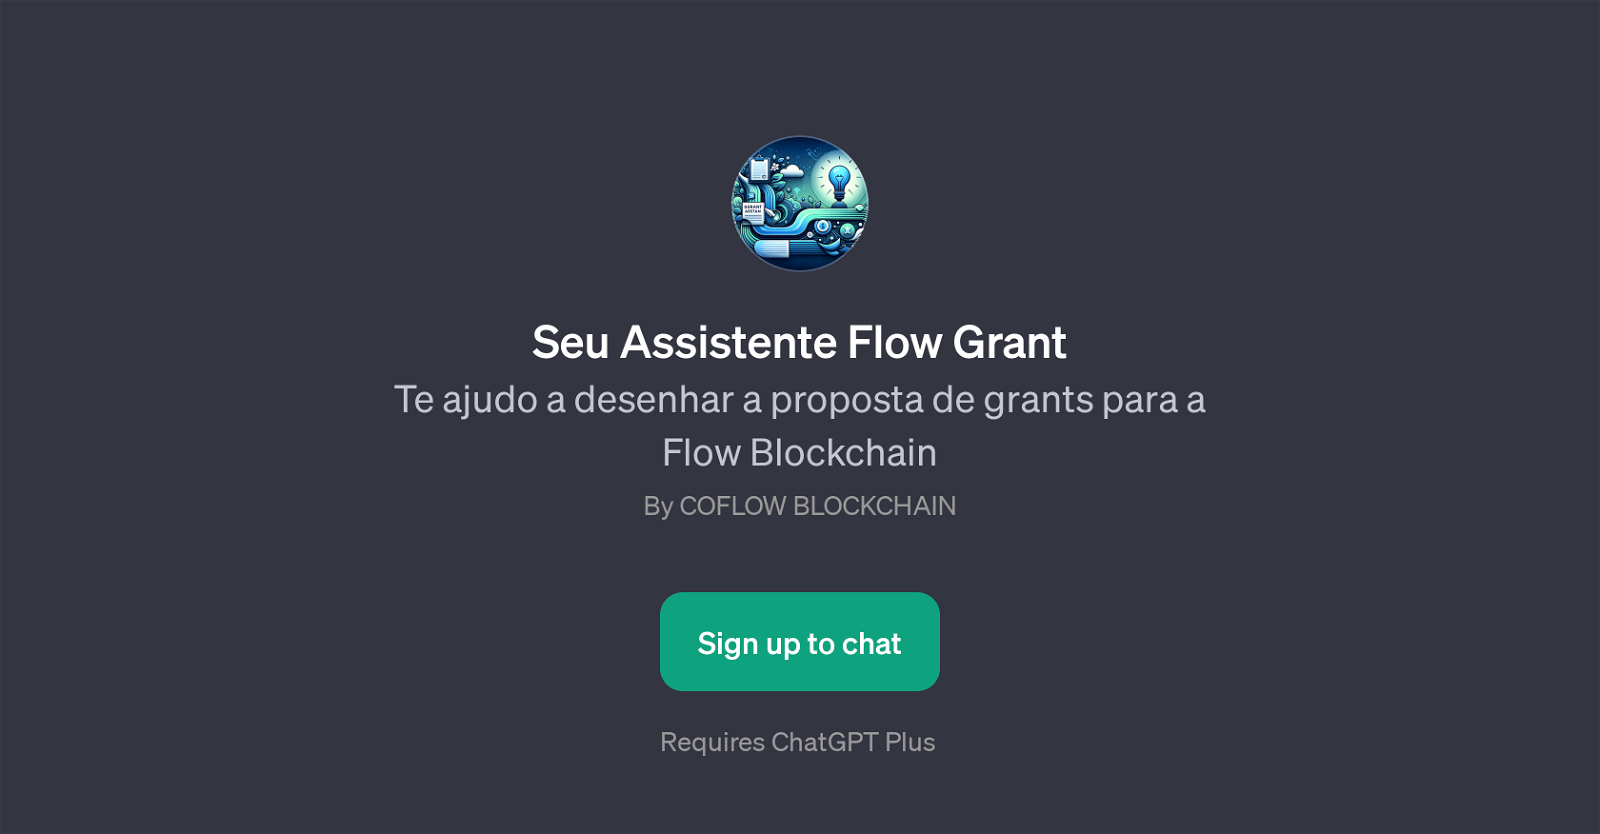 Seu Assistente Flow Grant website